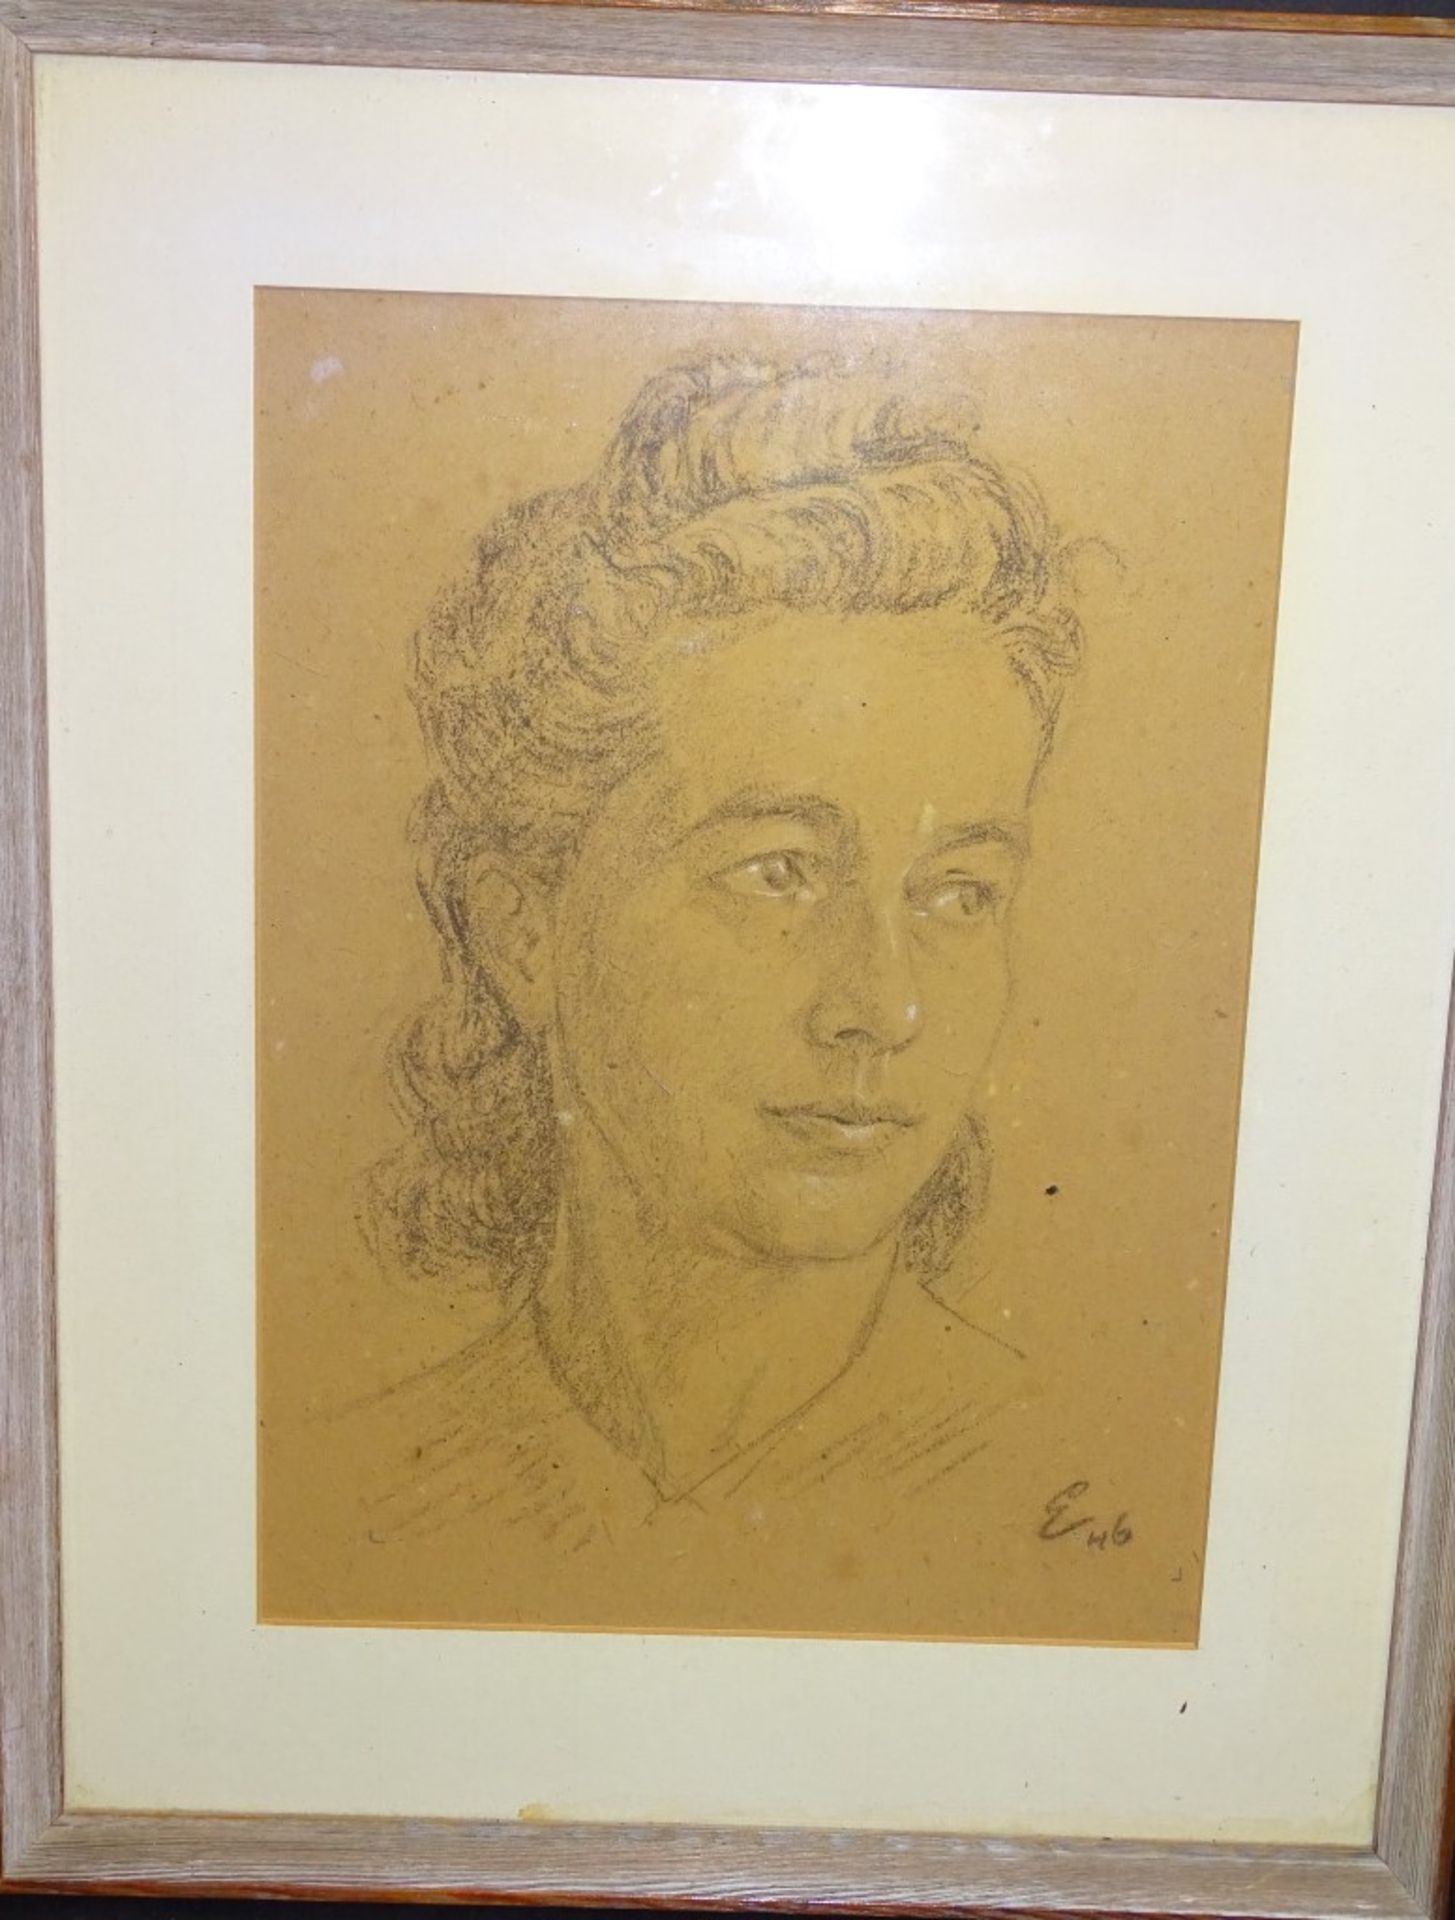 Zeichnung-Frauenportrait,u.r.Monogramm und Datierung (19)46,Gesicht weiss gehöht,ger/Glas,RG 49x39c